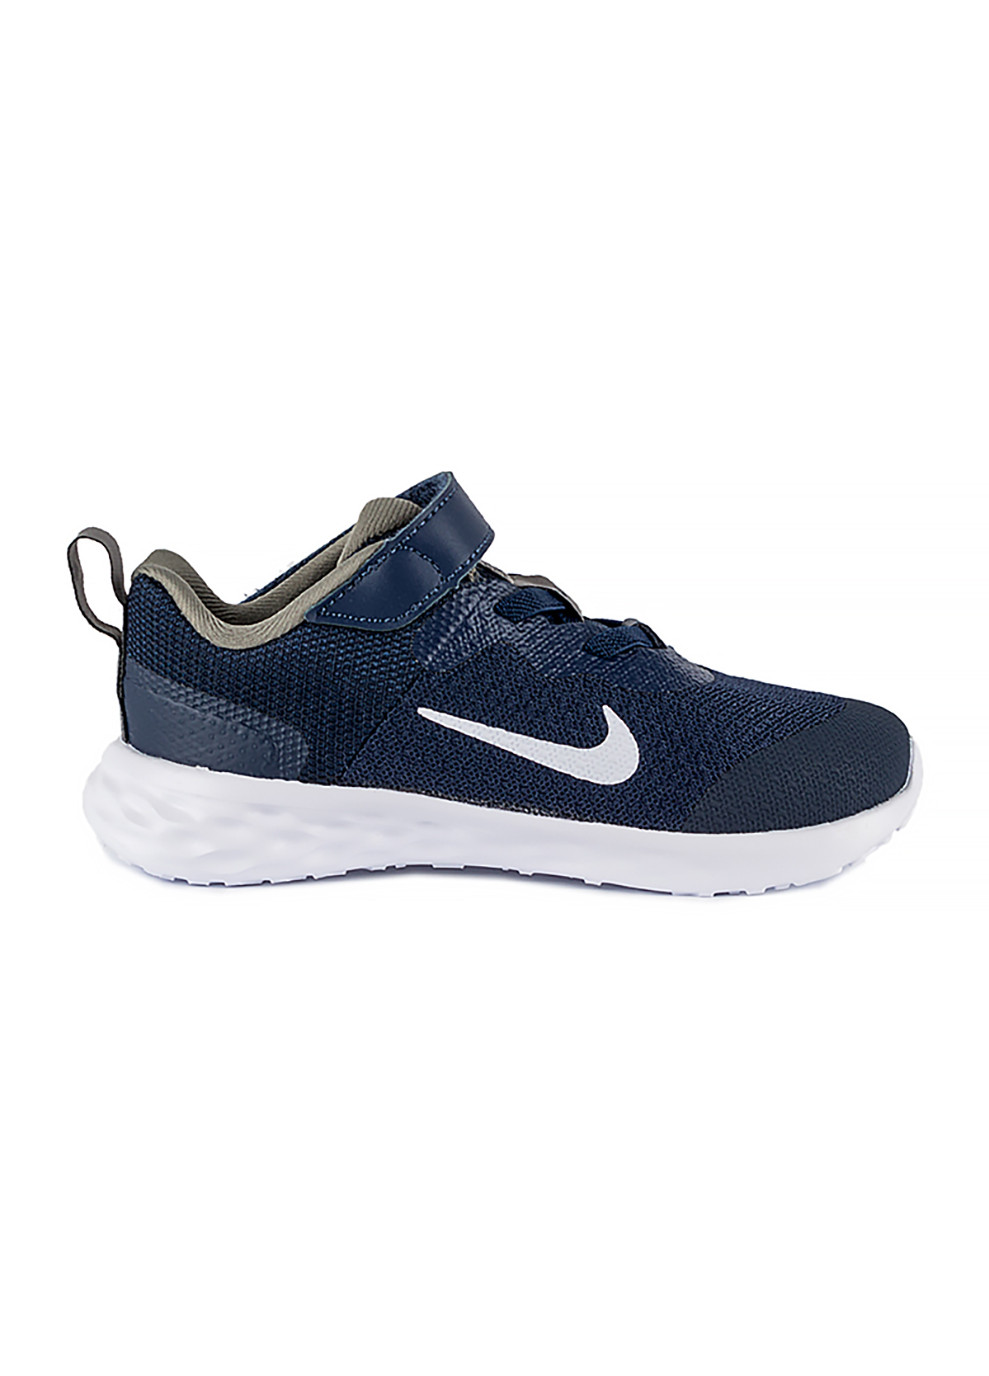 Синие демисезонные детские кроссовки revolution 6 nn (tdv) синий синий Nike